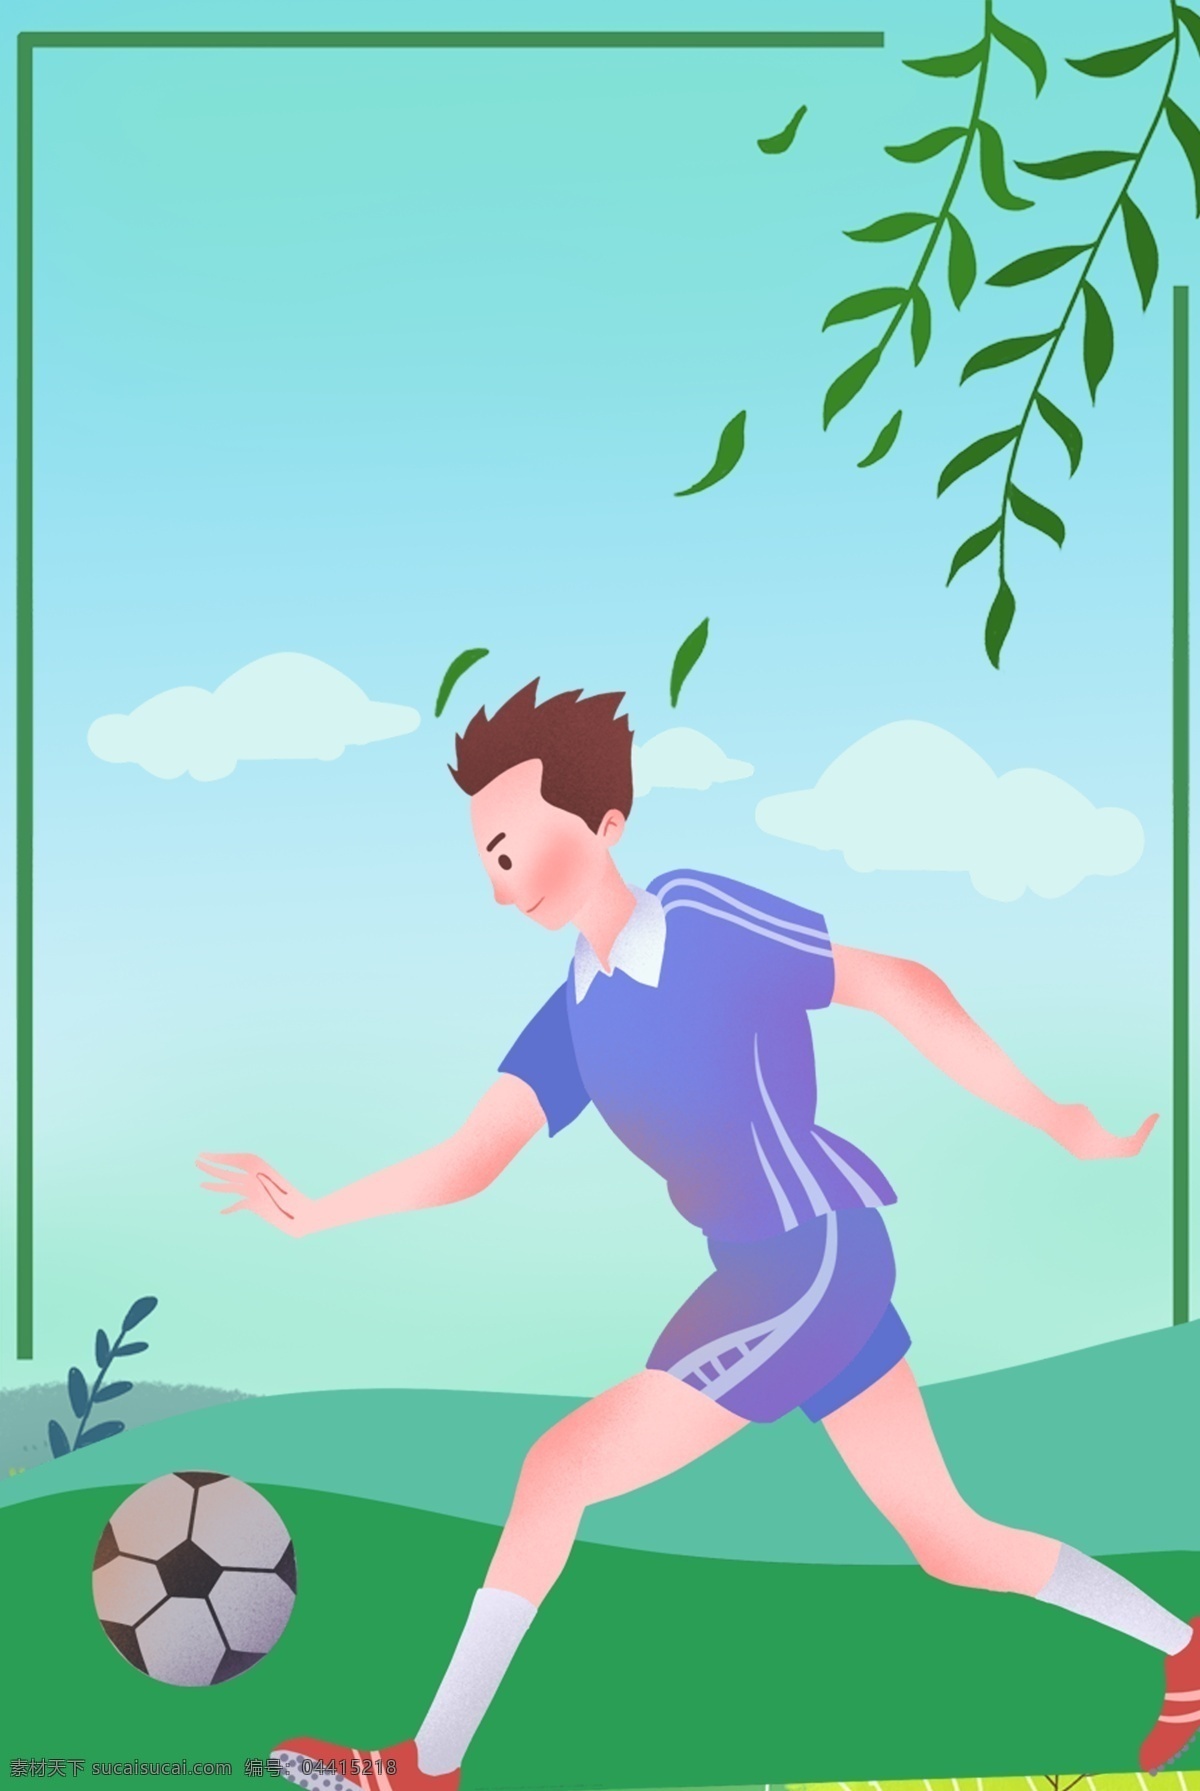 春季 运动会 足球 背景 踢球 跑步 运动 锻炼 健康 青春 校园 活力